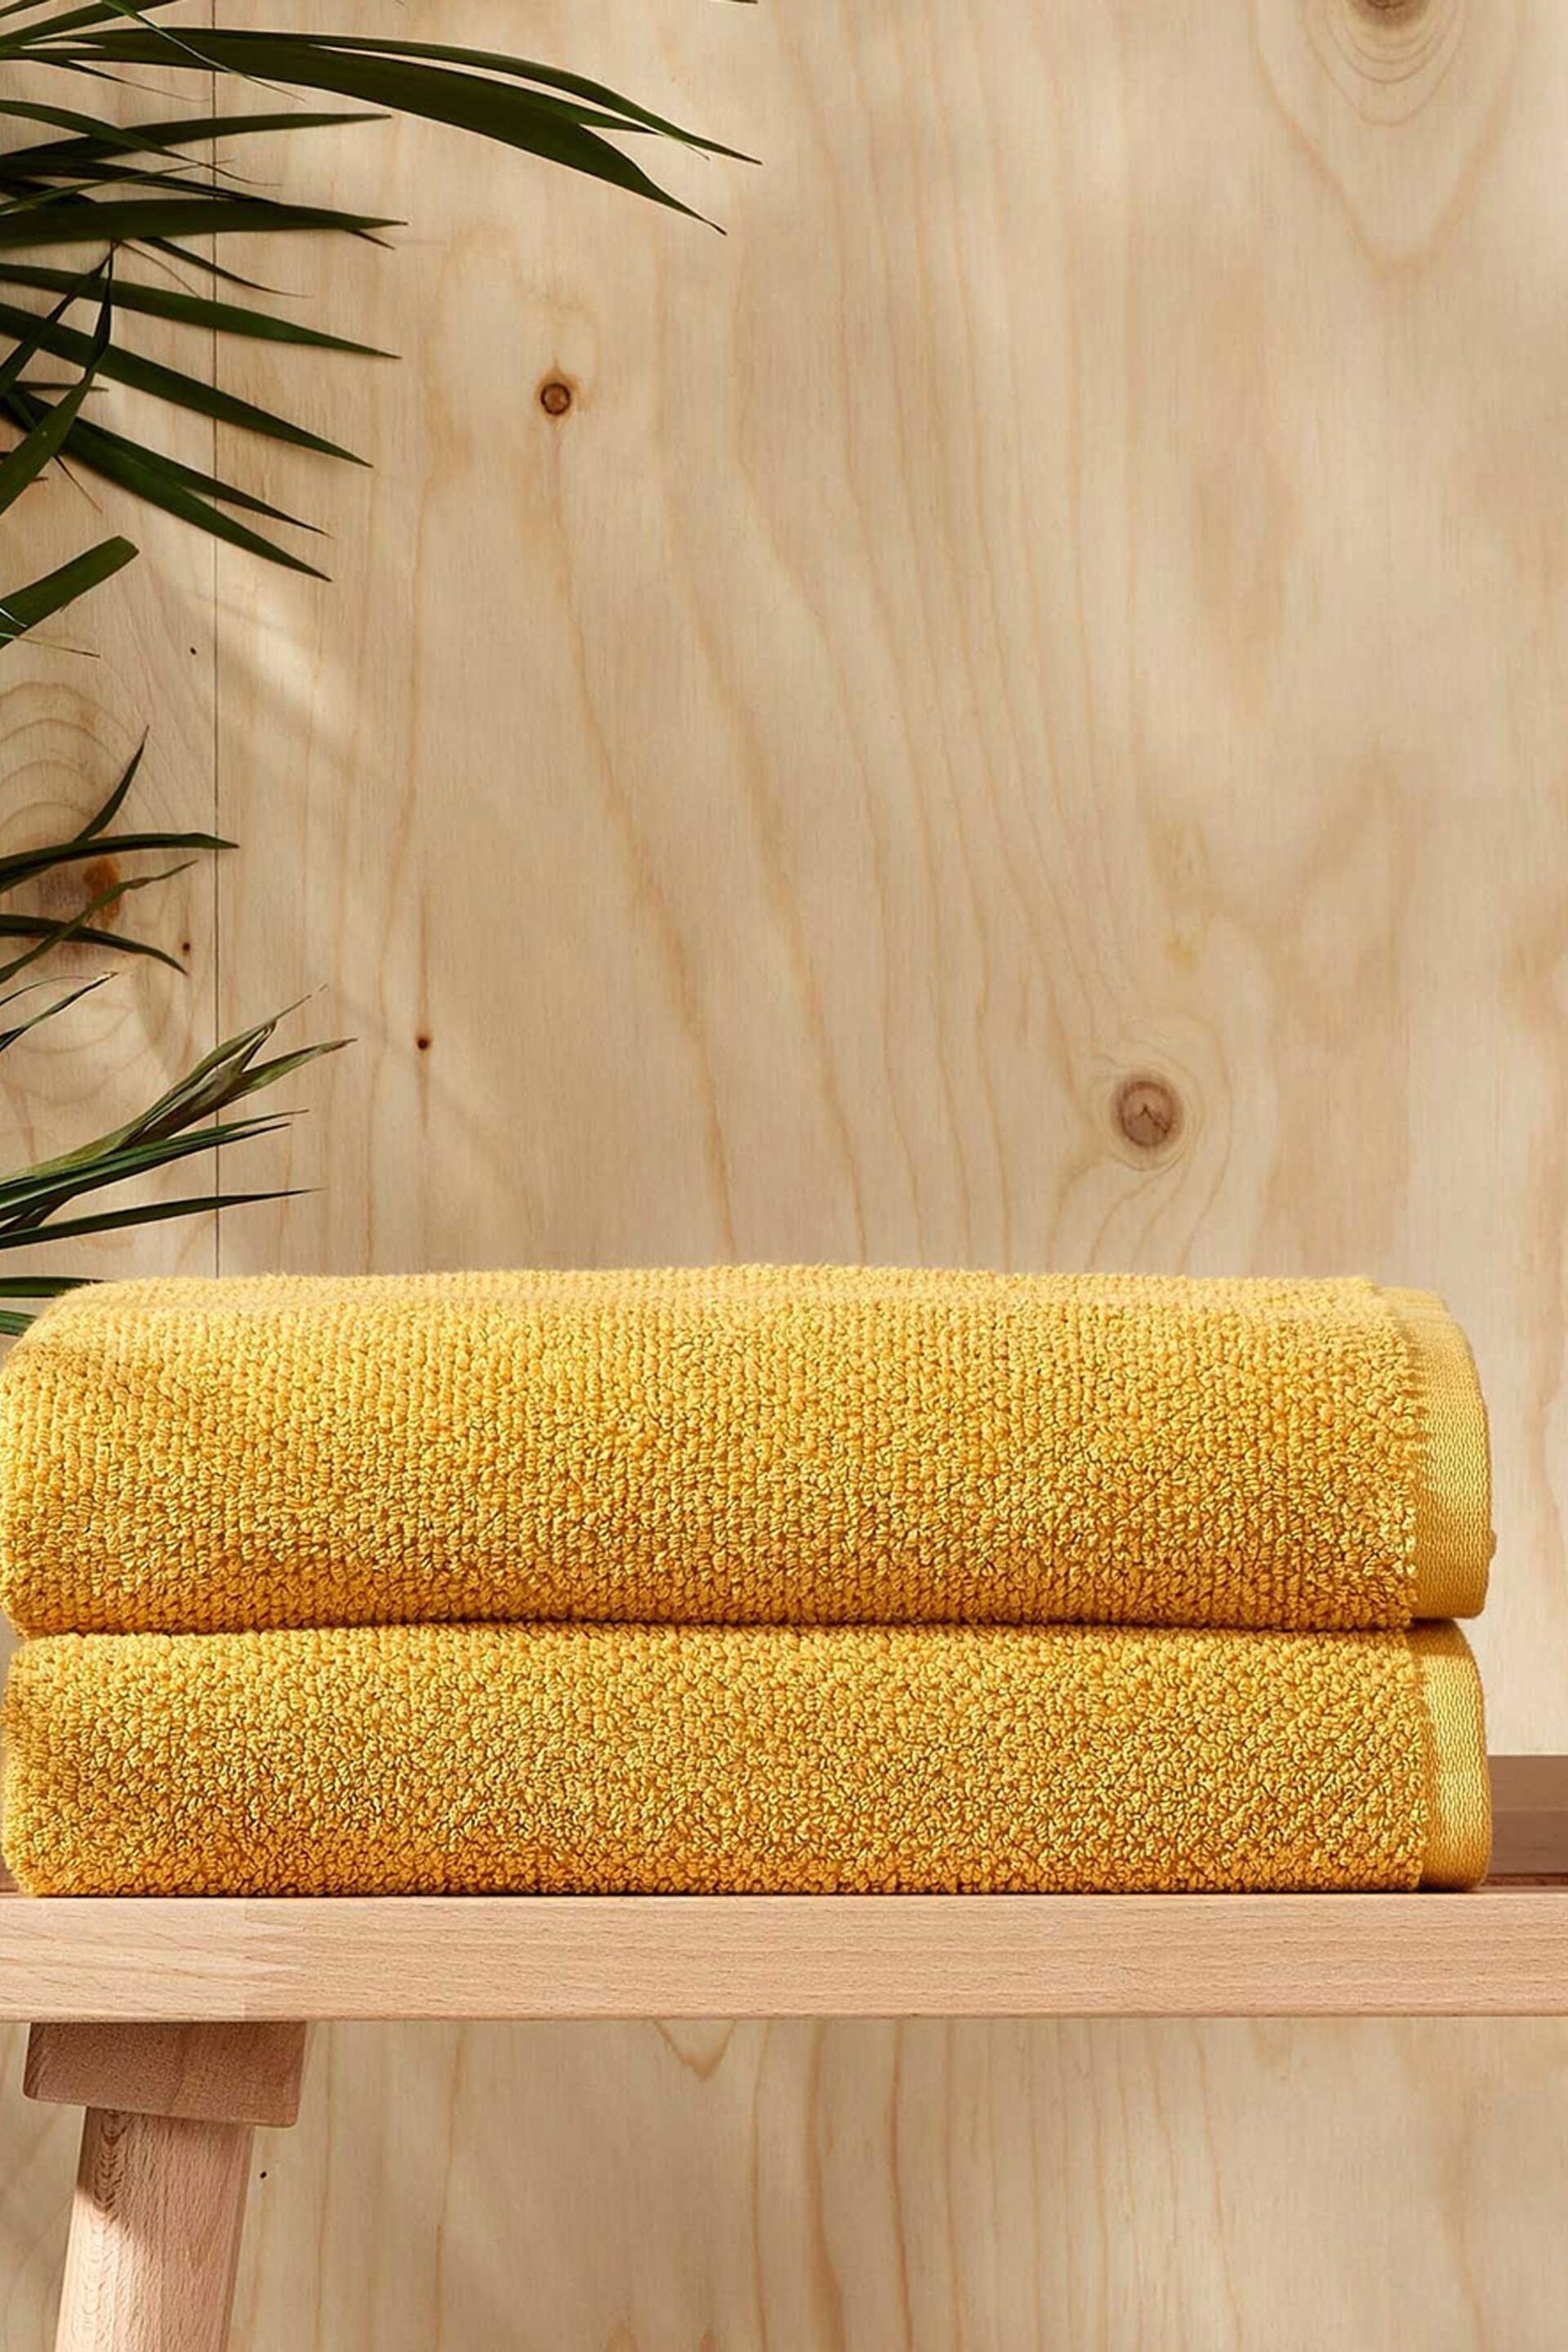 Christy Saffron Brixton - 600 GSM Cotton Textured Bath Towel - Image 2 of 4